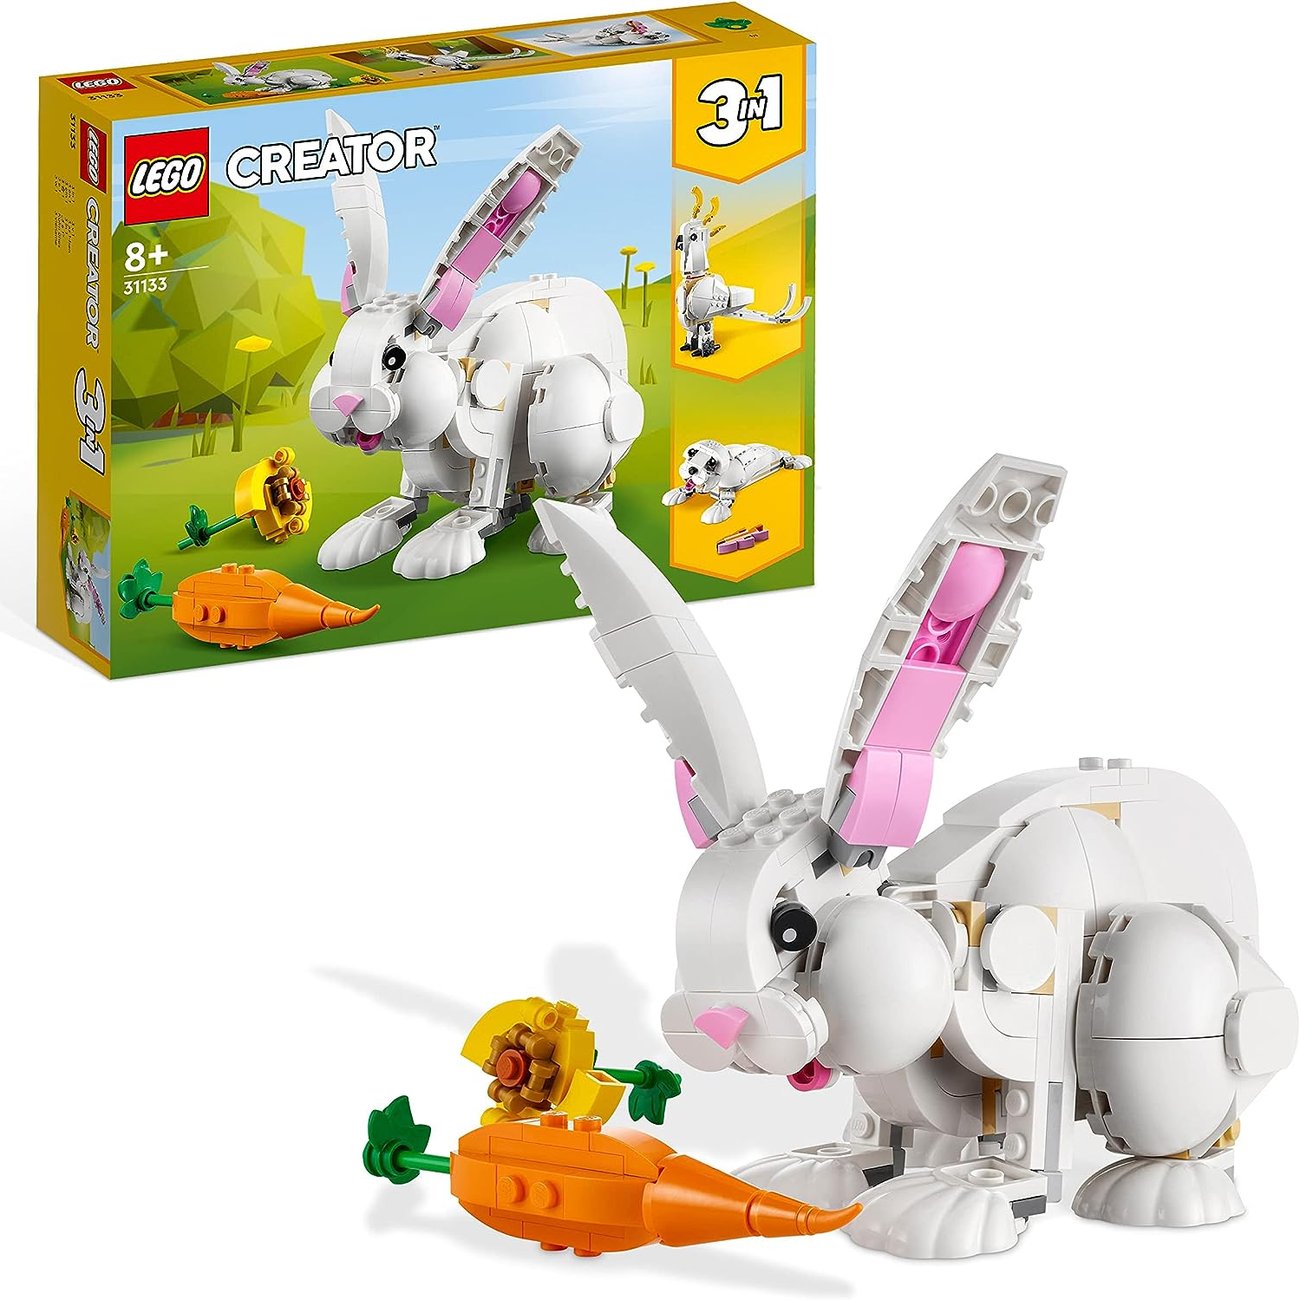 LEGO Creator 3in1 Weißer Hase mit Hasen-, Robben- und Papageienfiguren